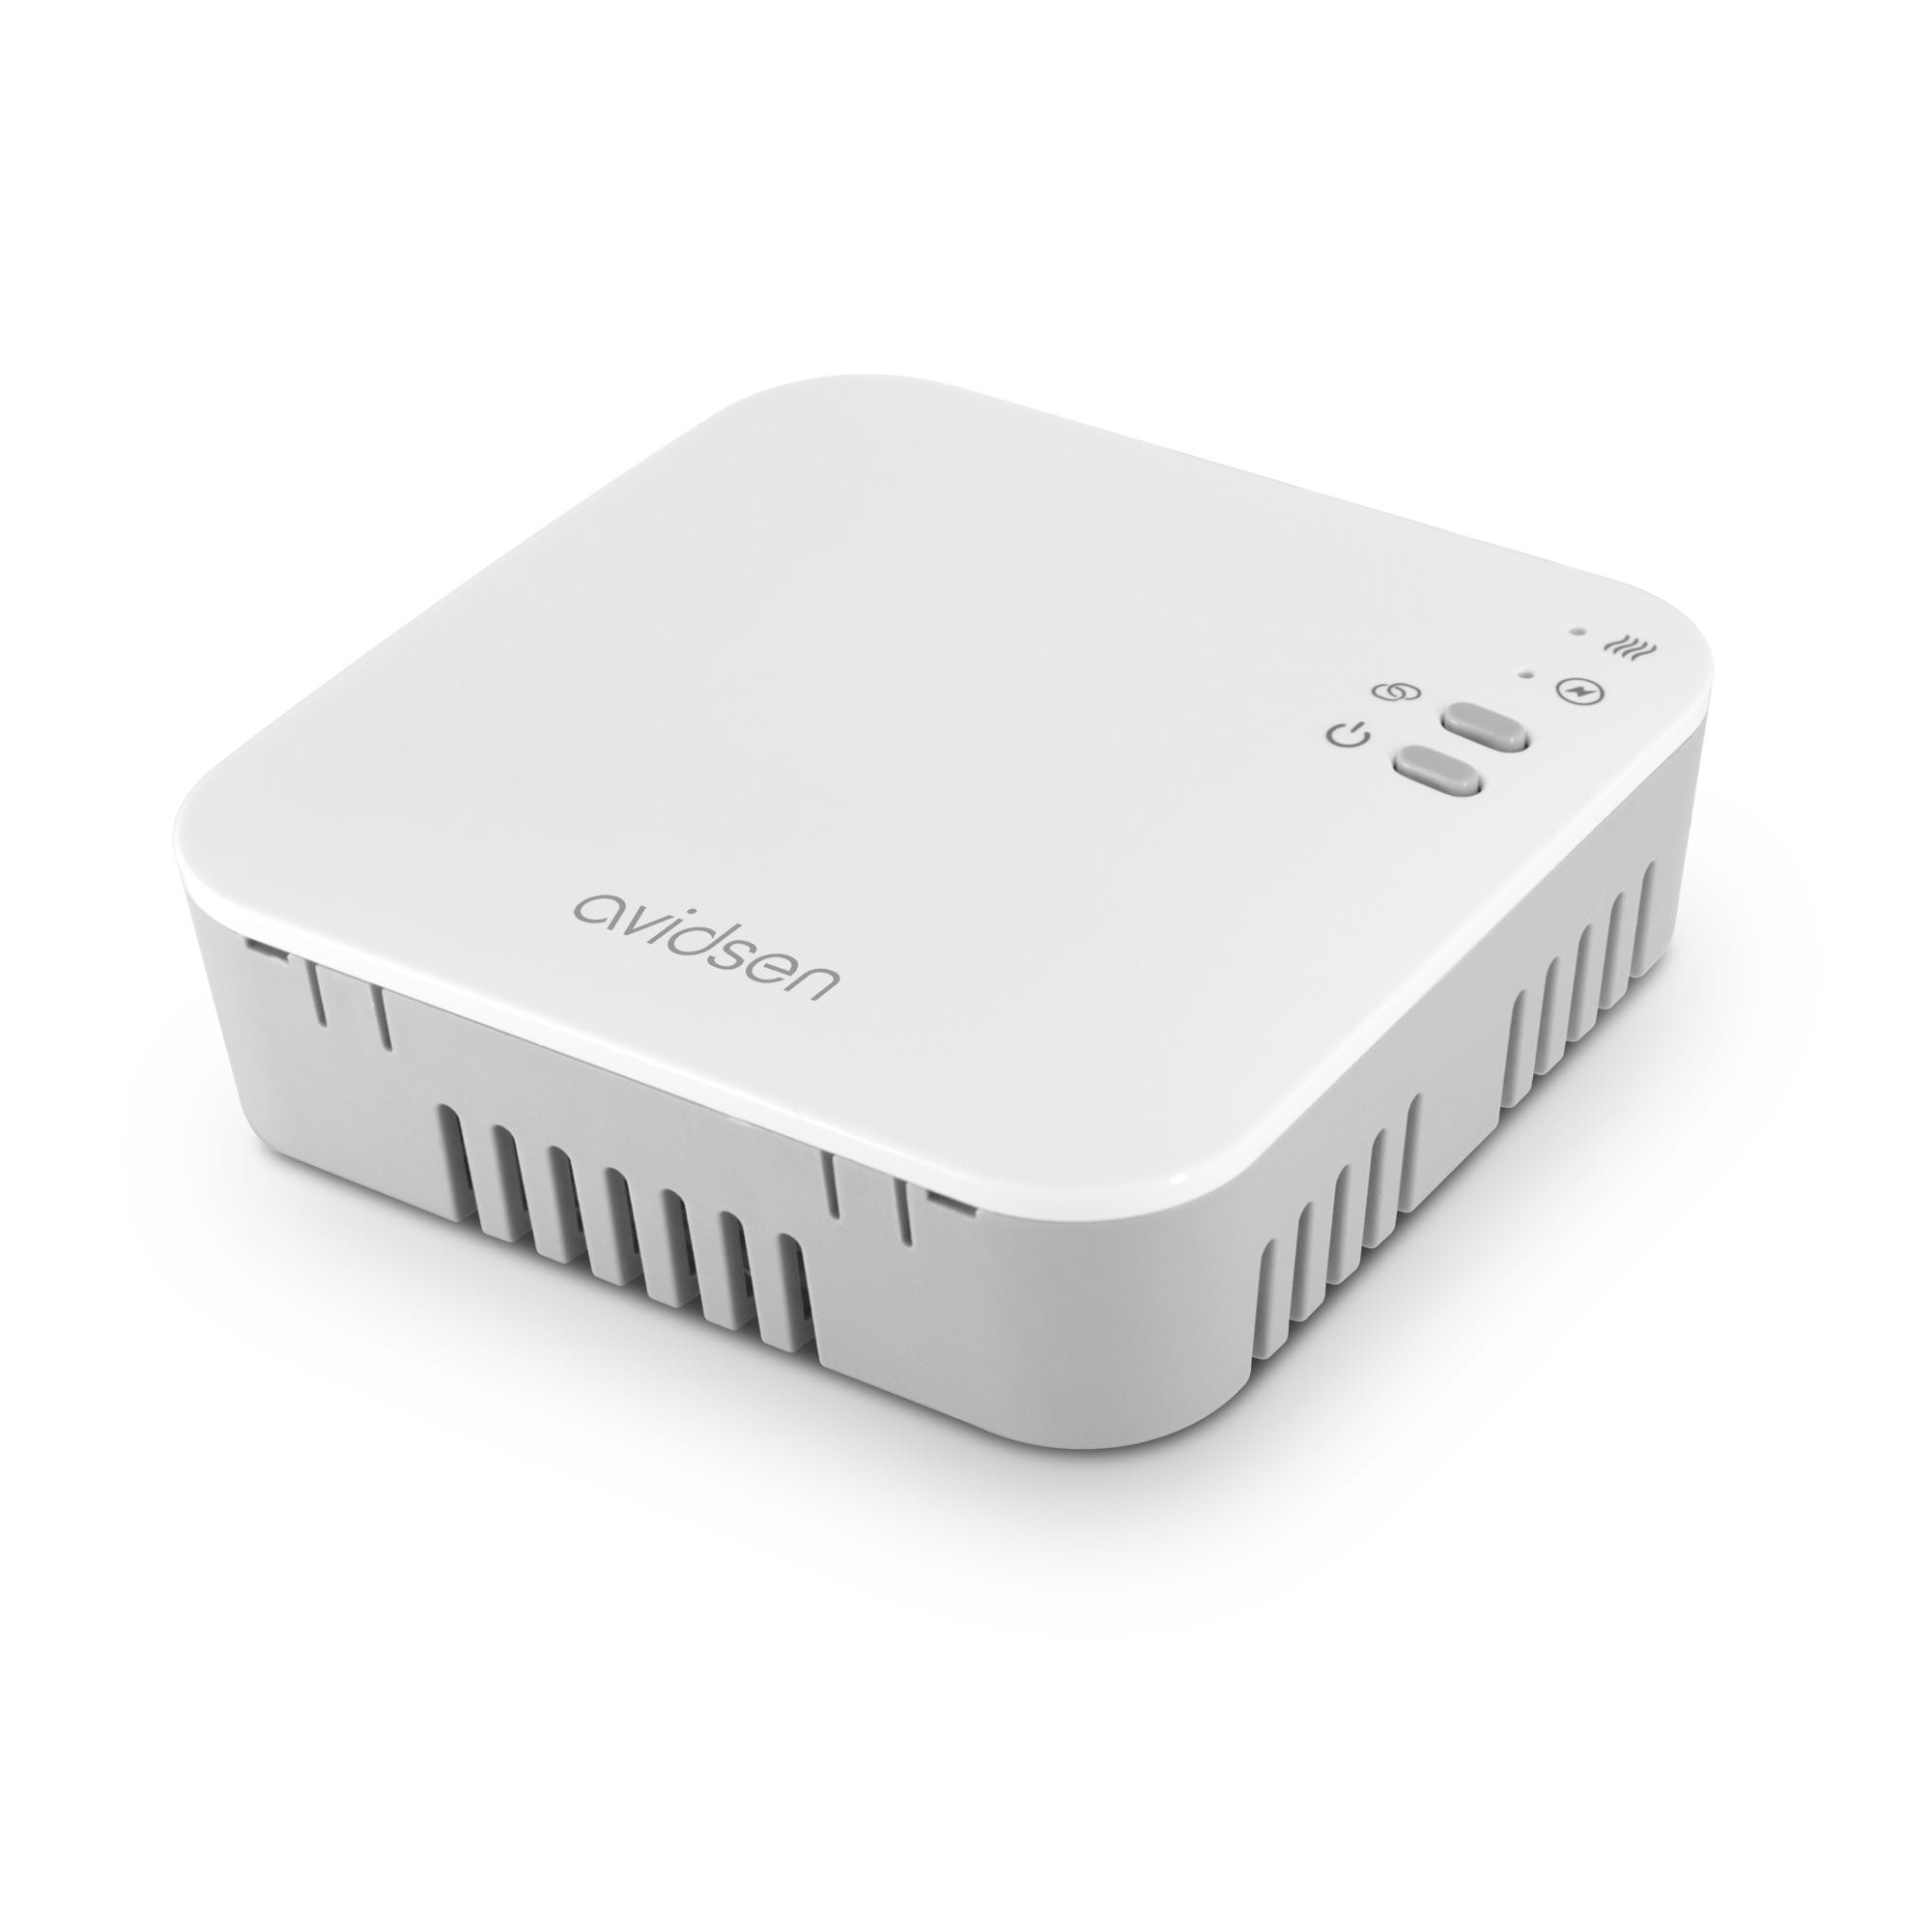 Termostato Wifi a Batteria Wireless HomeFlow WL Avidsen - Compatibile Assistenti vocali Google e Alexa 7